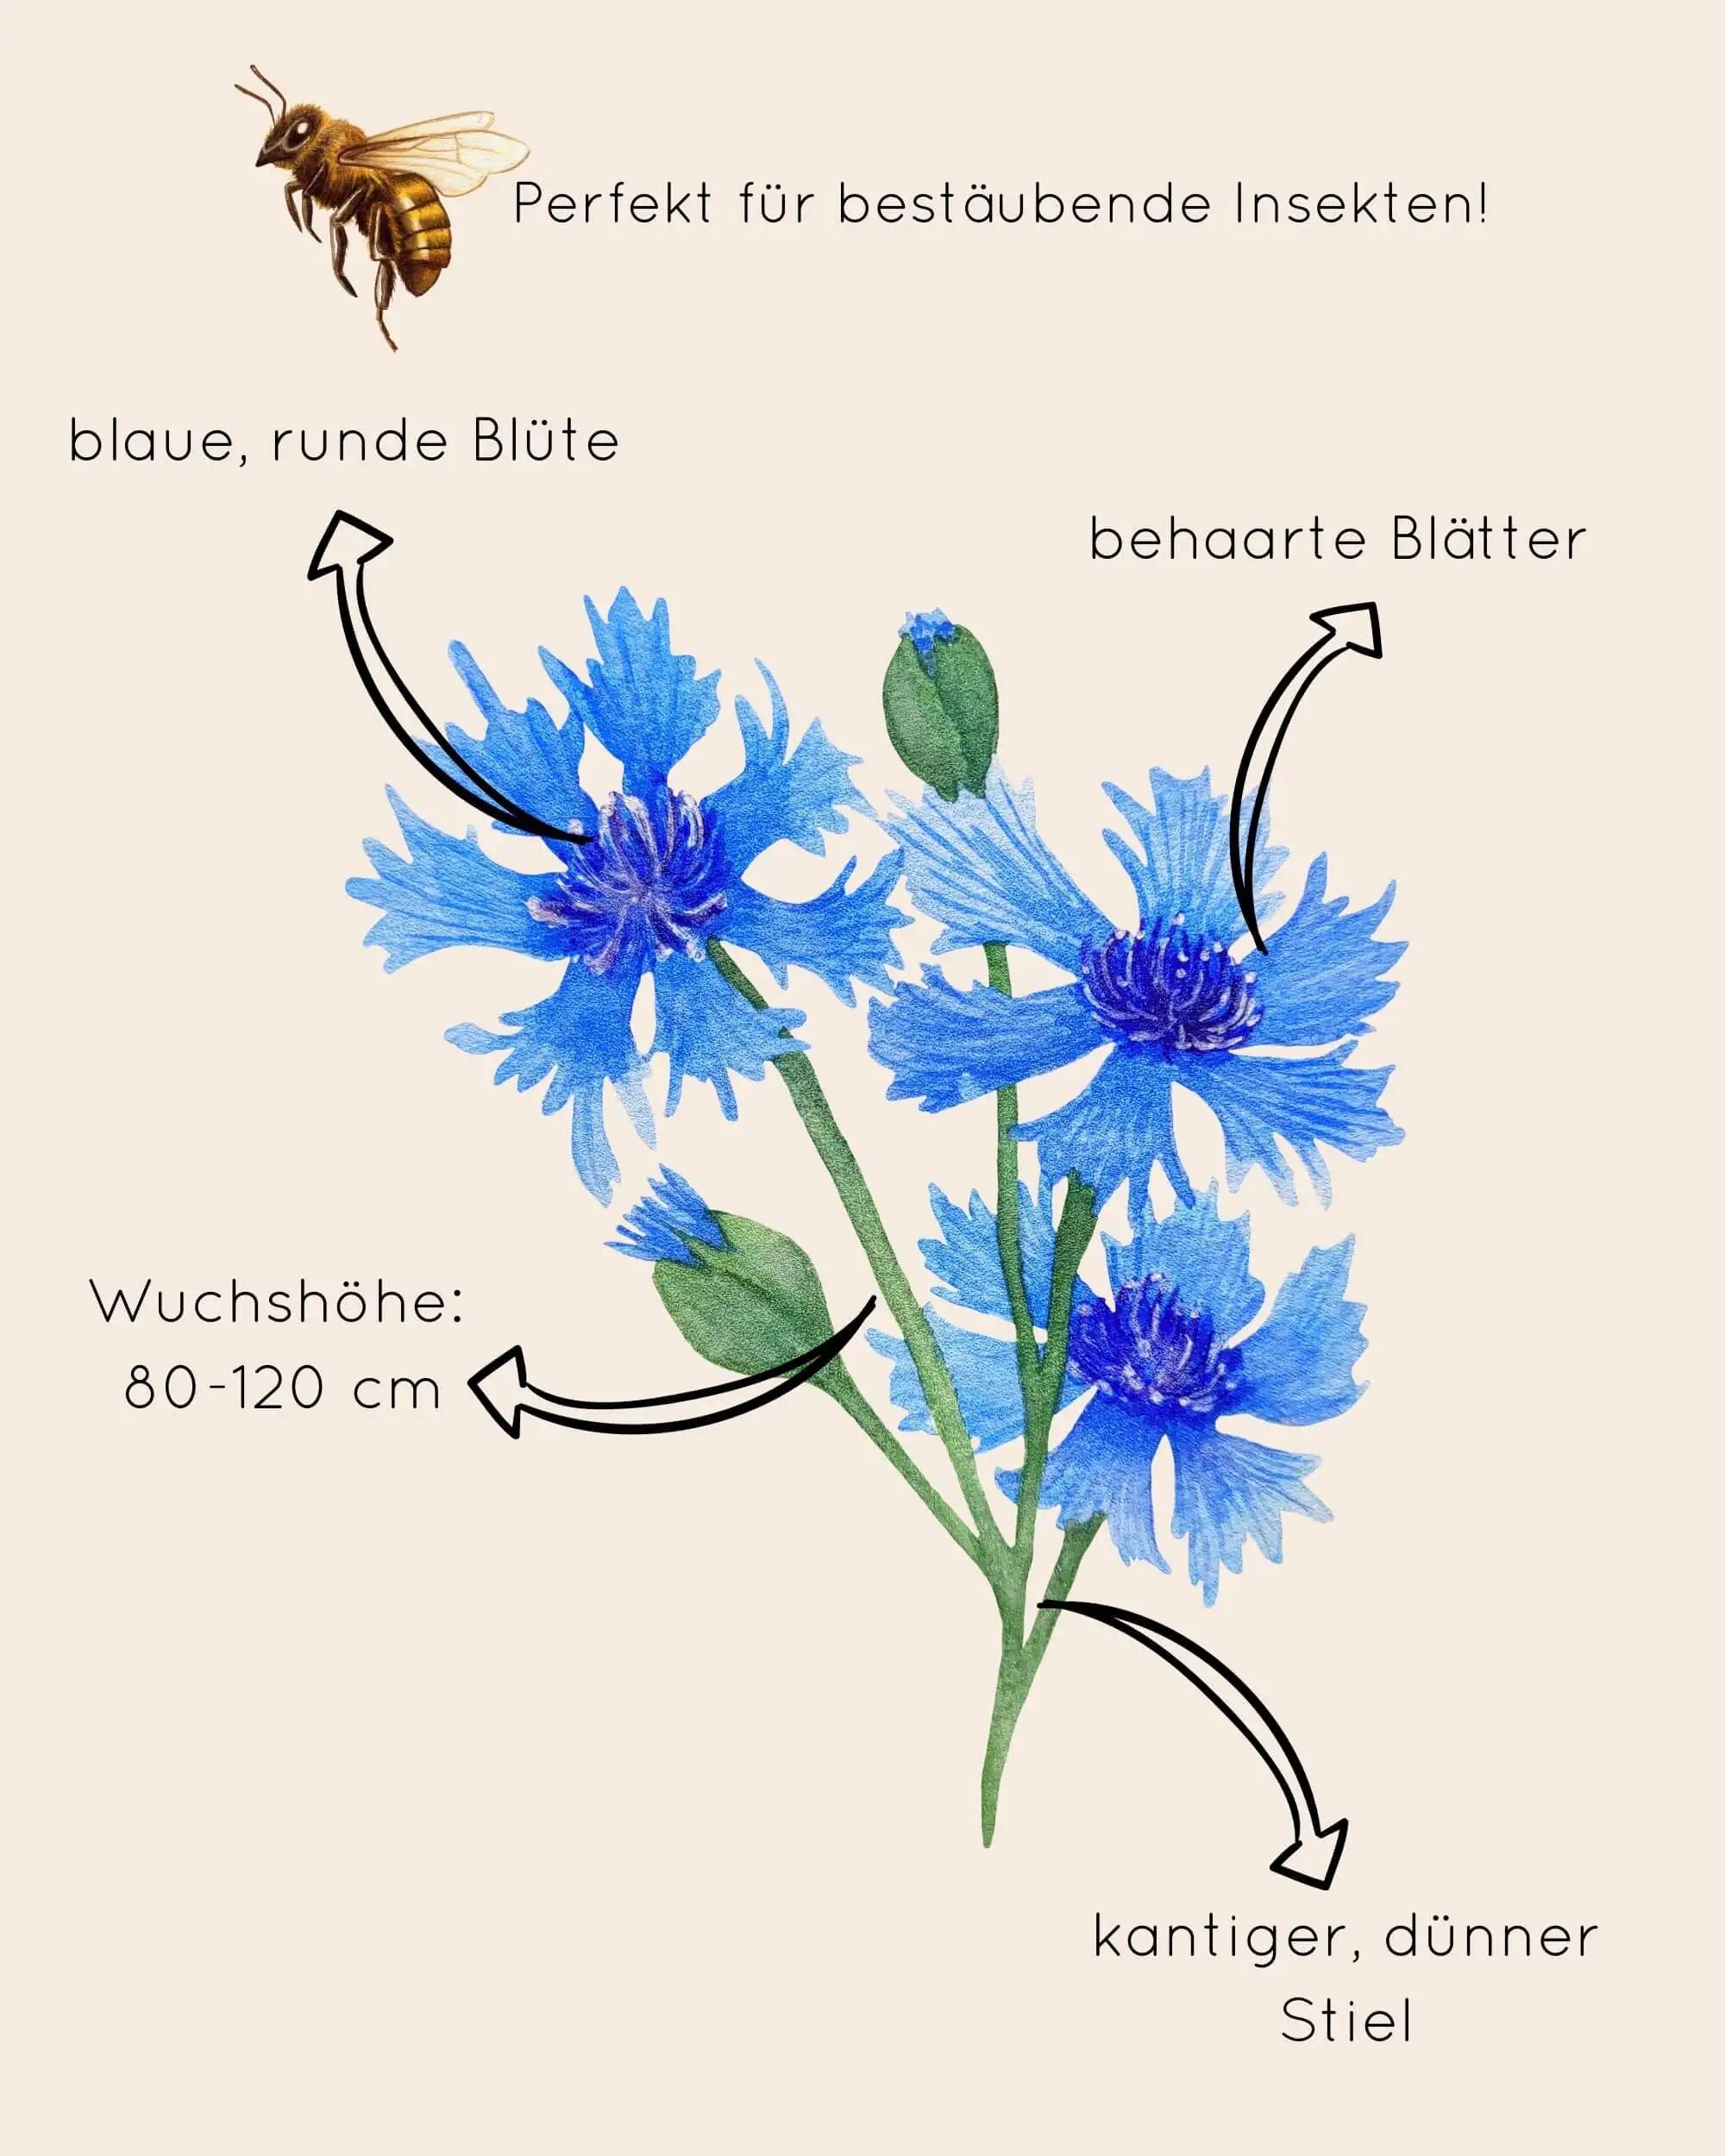 Zeichnung mit Merkmalen der blauen Kornblume